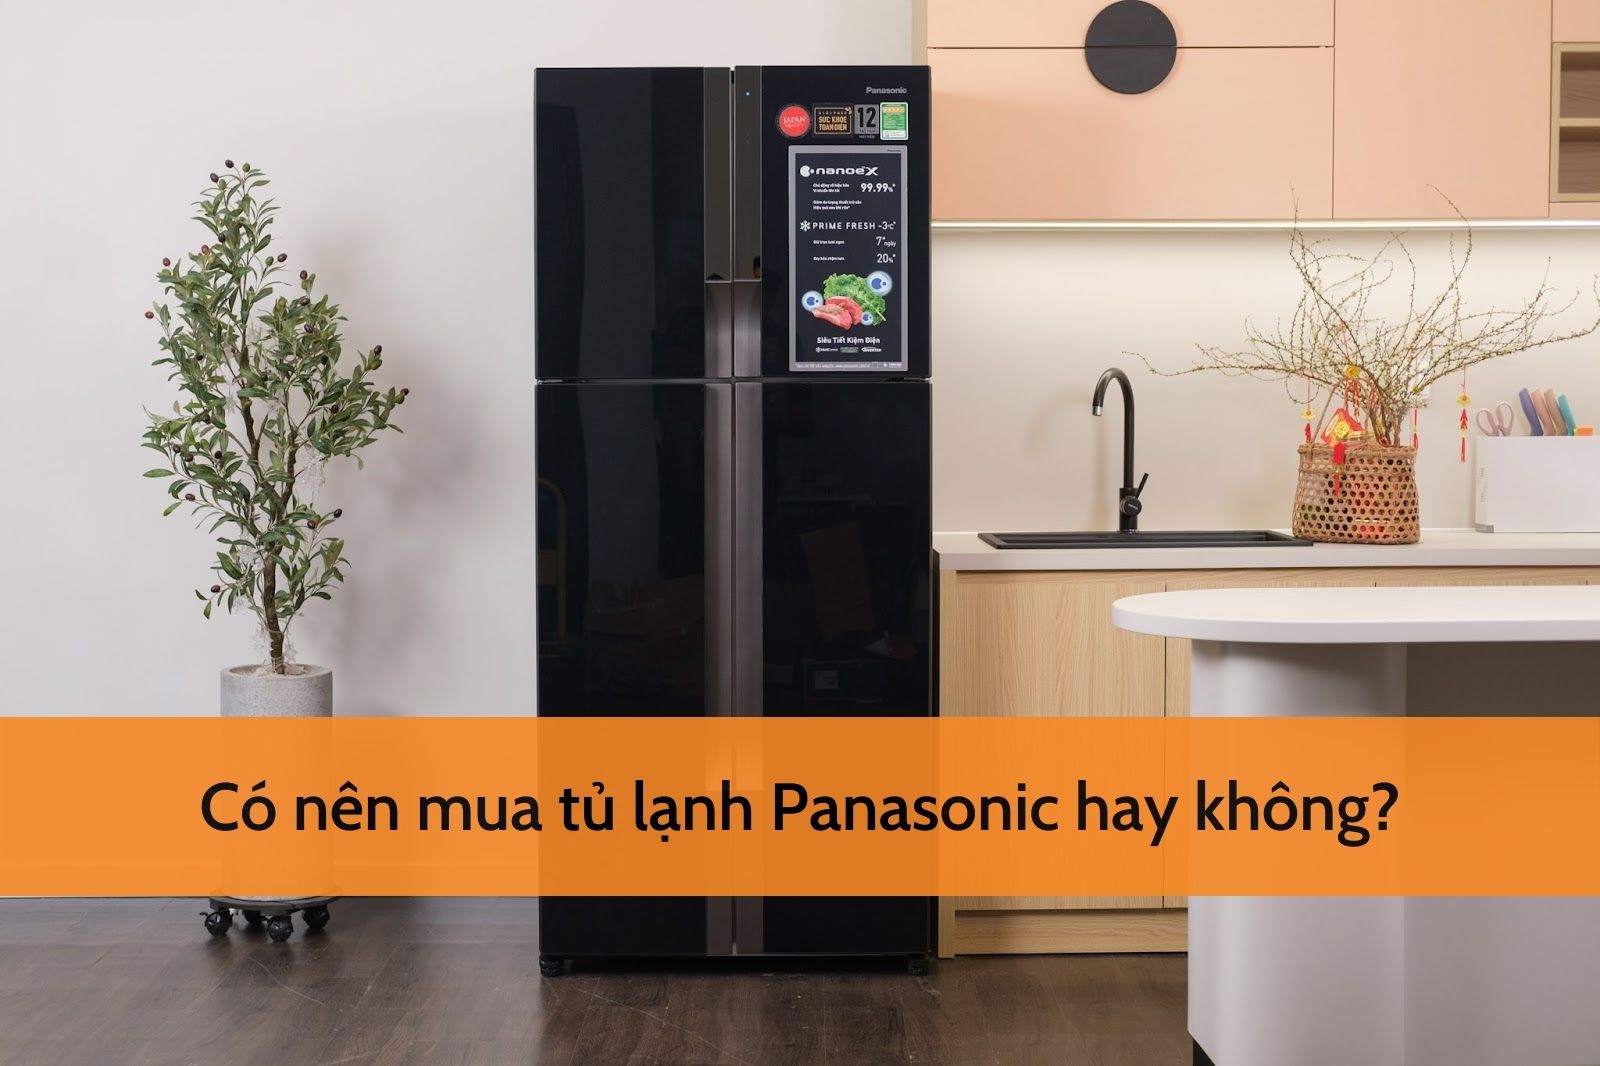 Có nên mua tủ lạnh Panasonic không là thắc mắc chung của nhiều người